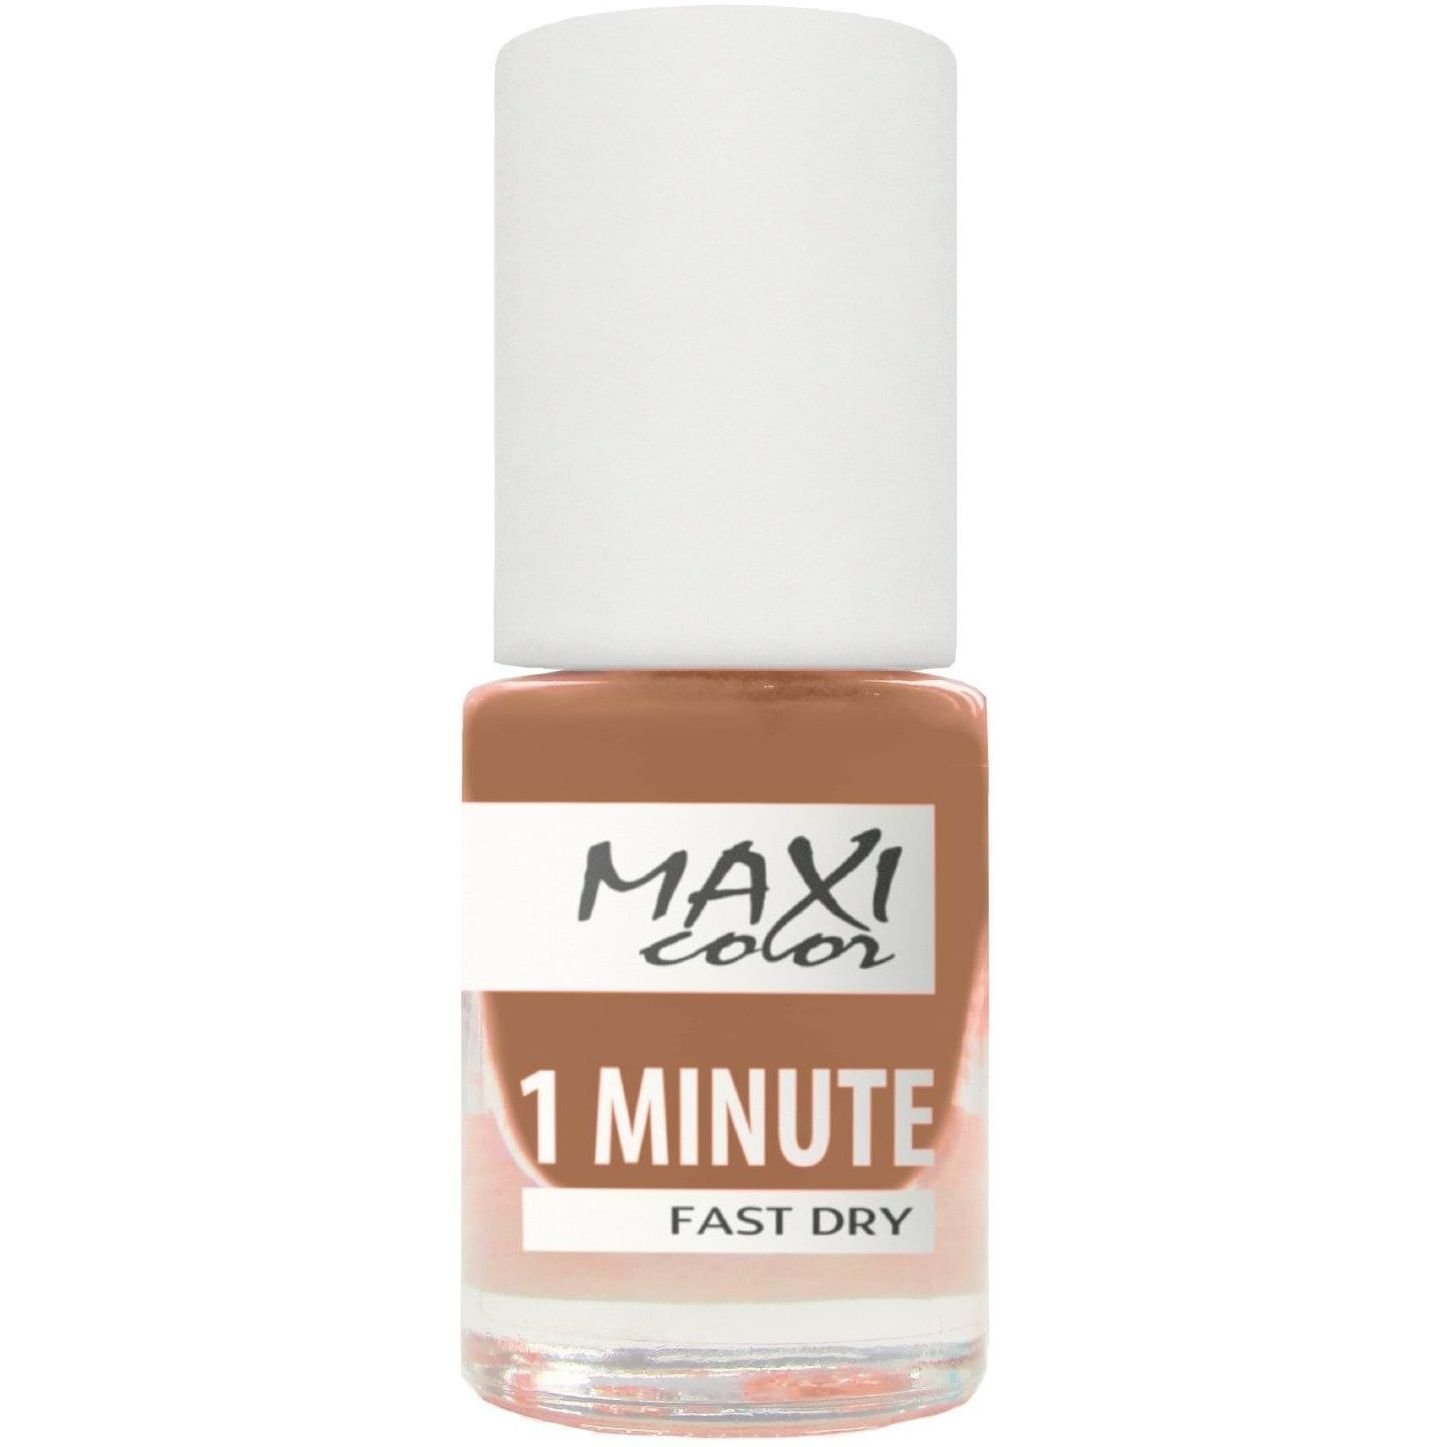 Лак для нігтів Maxi Color 1 Minute Fast Dry відтінок 011, 6 мл - фото 1